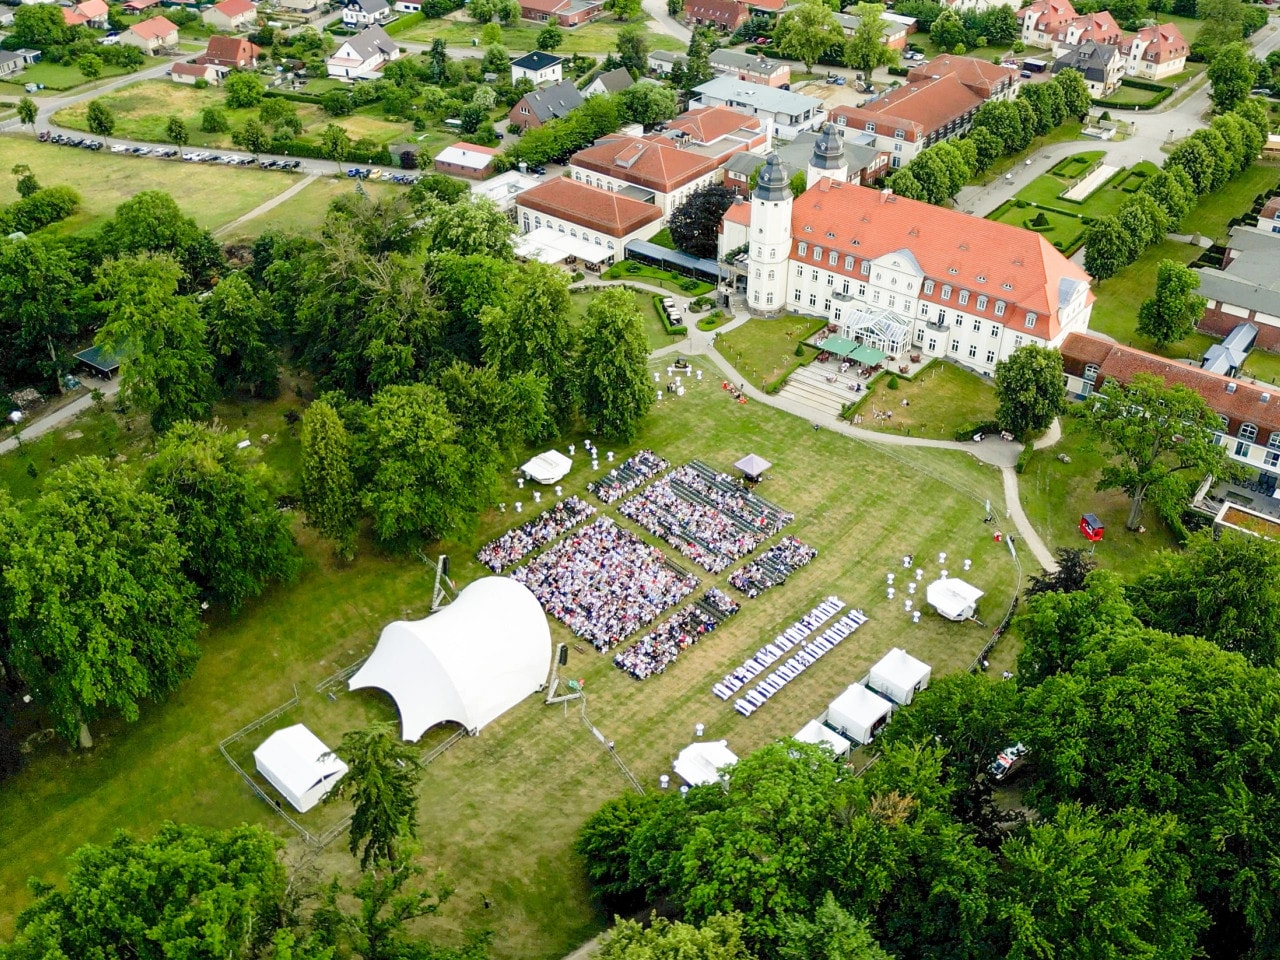 Veranstaltung im Schlosspark Schloss Fleesensee im Sommer